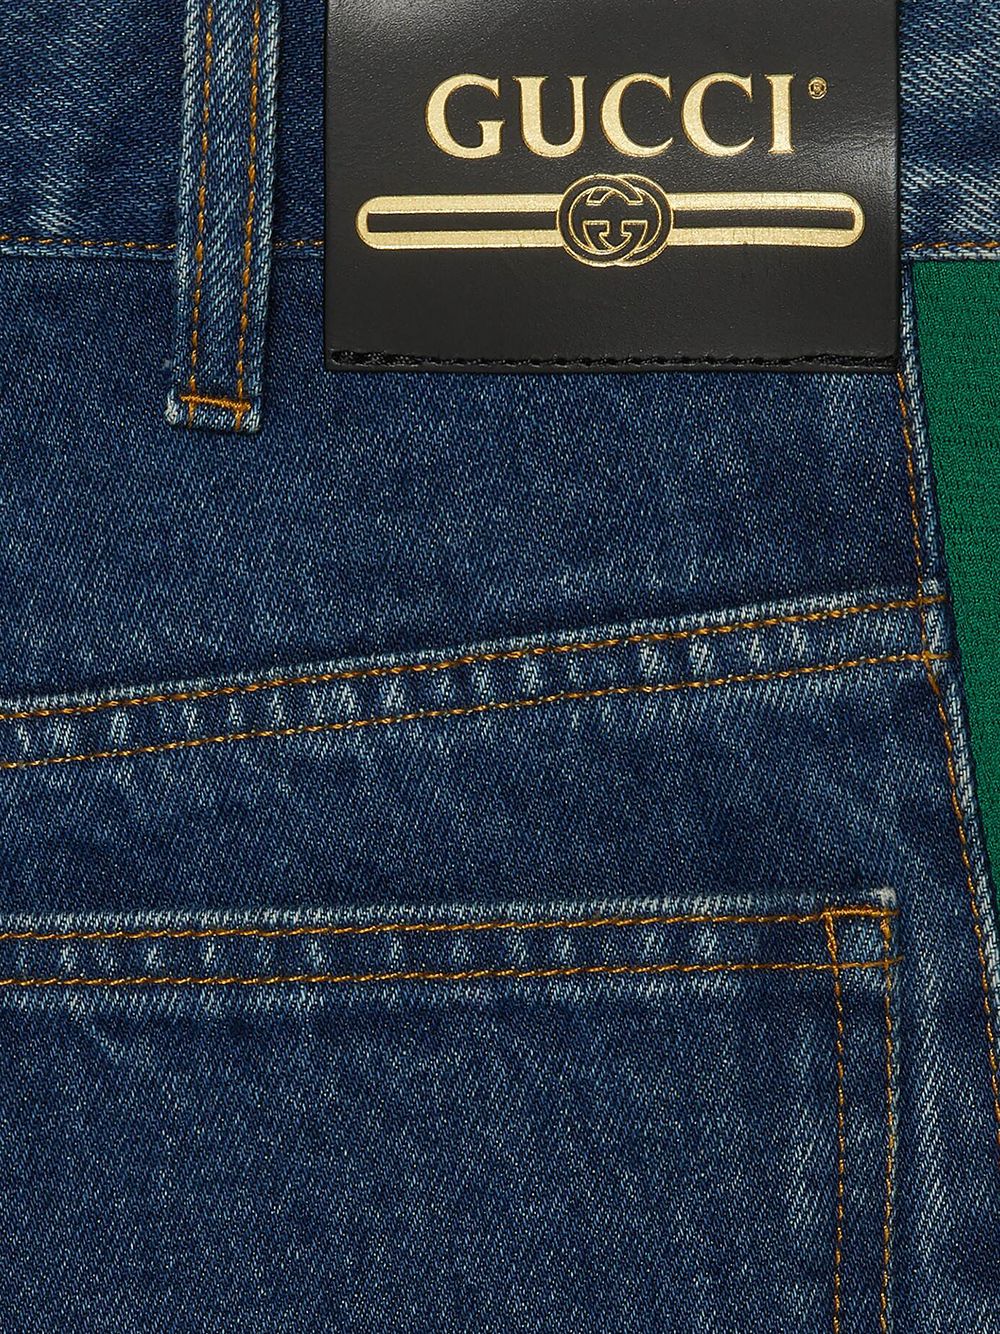 фото Gucci прямые джинсы с лампасами